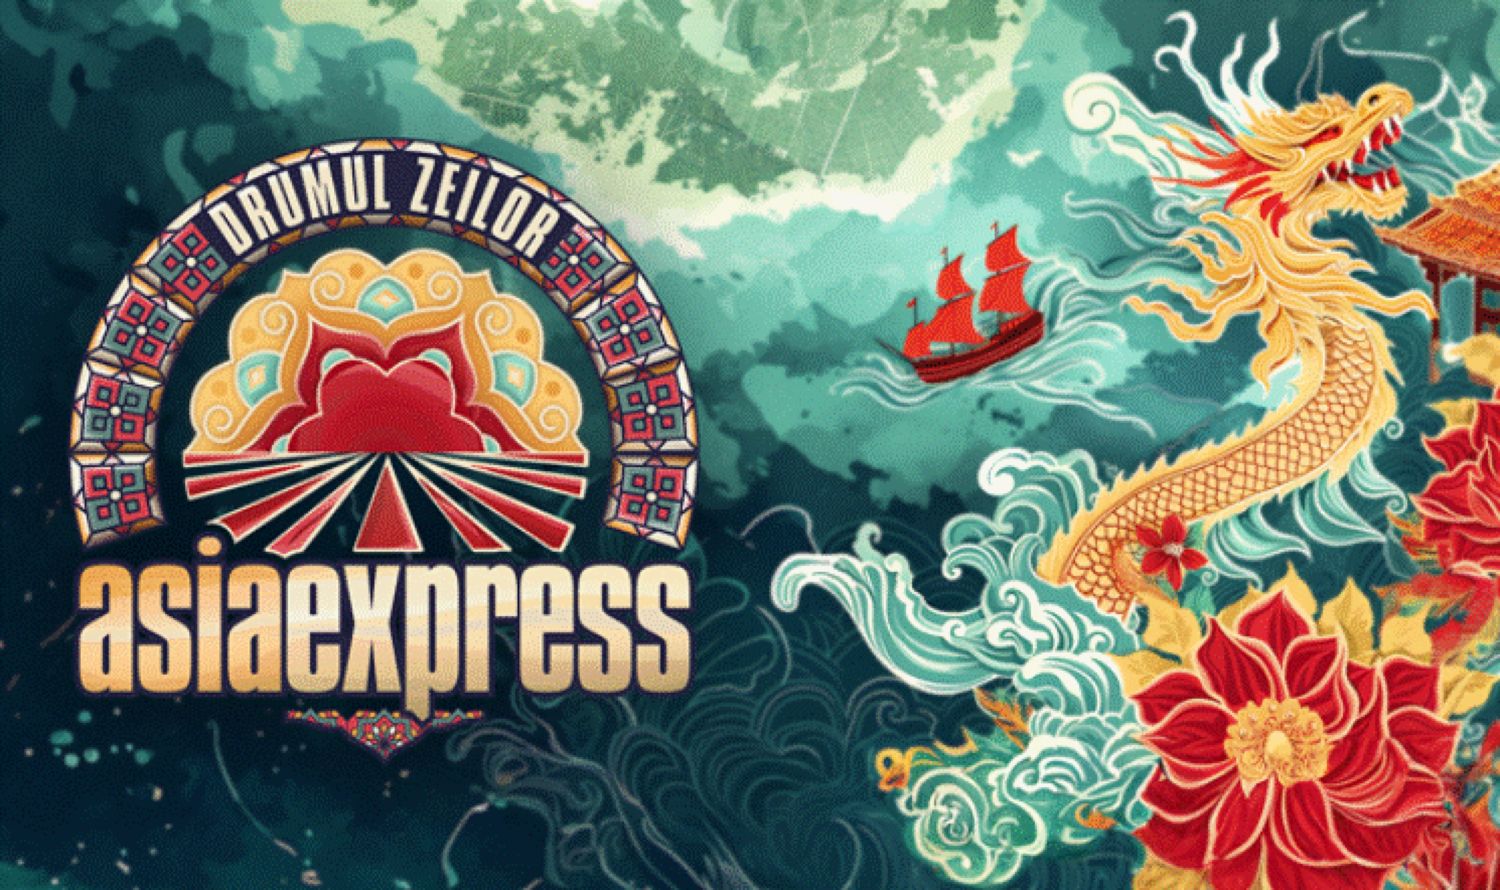 Asia Express 2024 începe cu noutăți pentru concurenți. Curajoasele vedete pleacă pe Drumul Zeilor